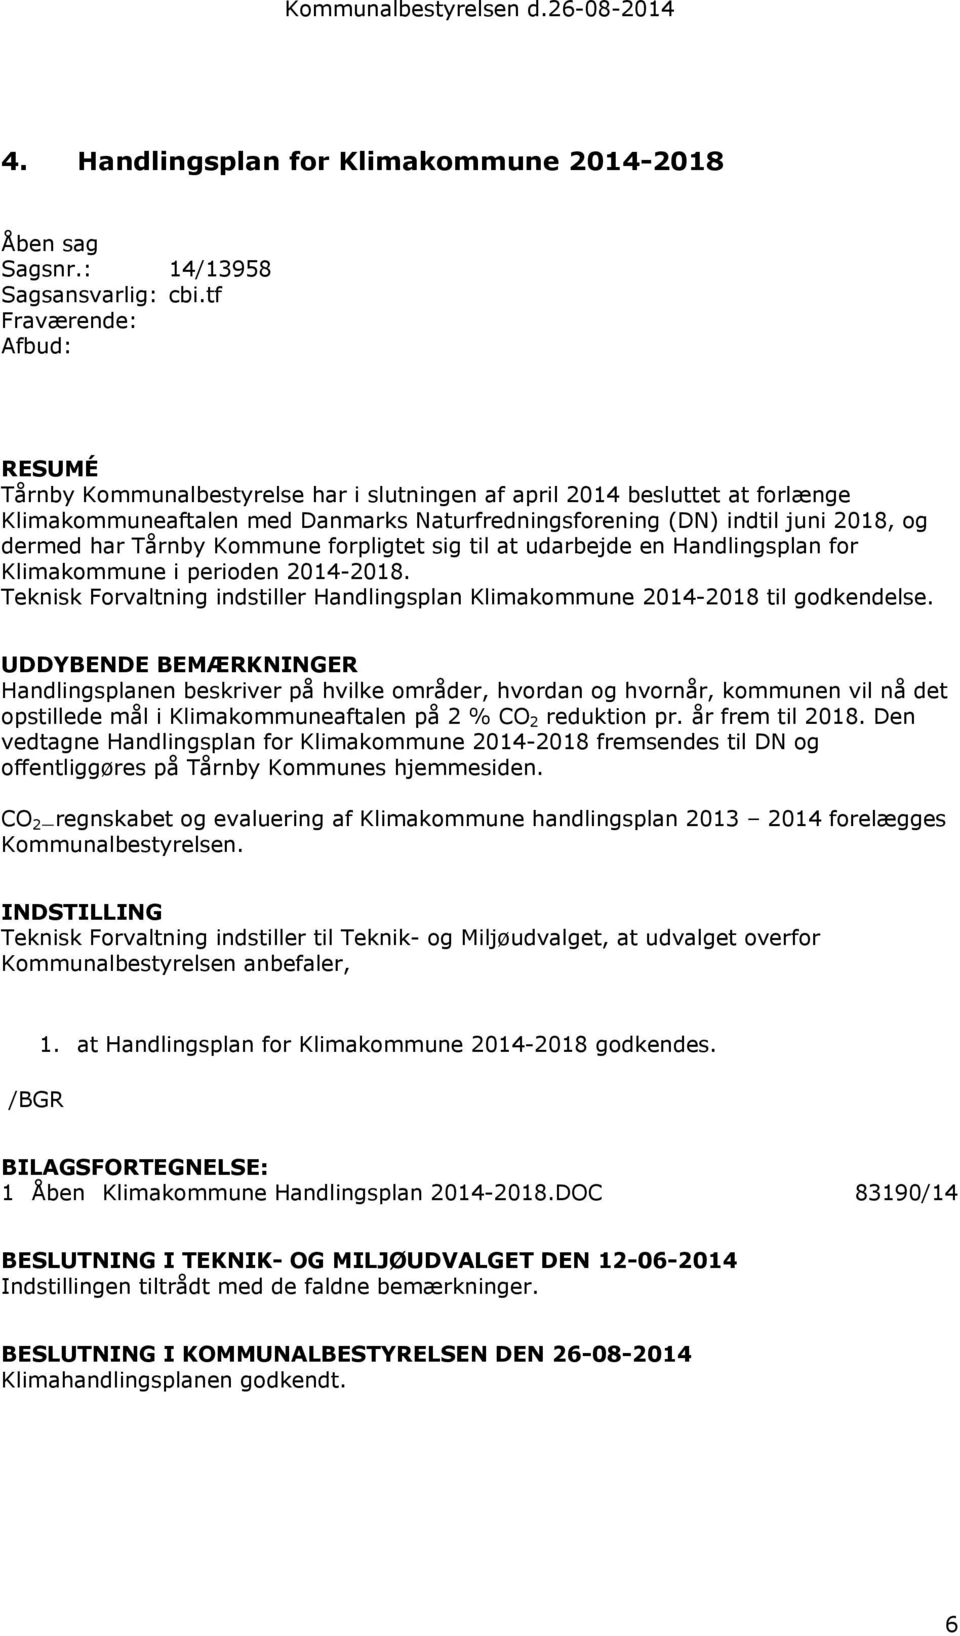 har Tårnby Kommune forpligtet sig til at udarbejde en Handlingsplan for Klimakommune i perioden 2014-2018. Teknisk Forvaltning indstiller Handlingsplan Klimakommune 2014-2018 til godkendelse.